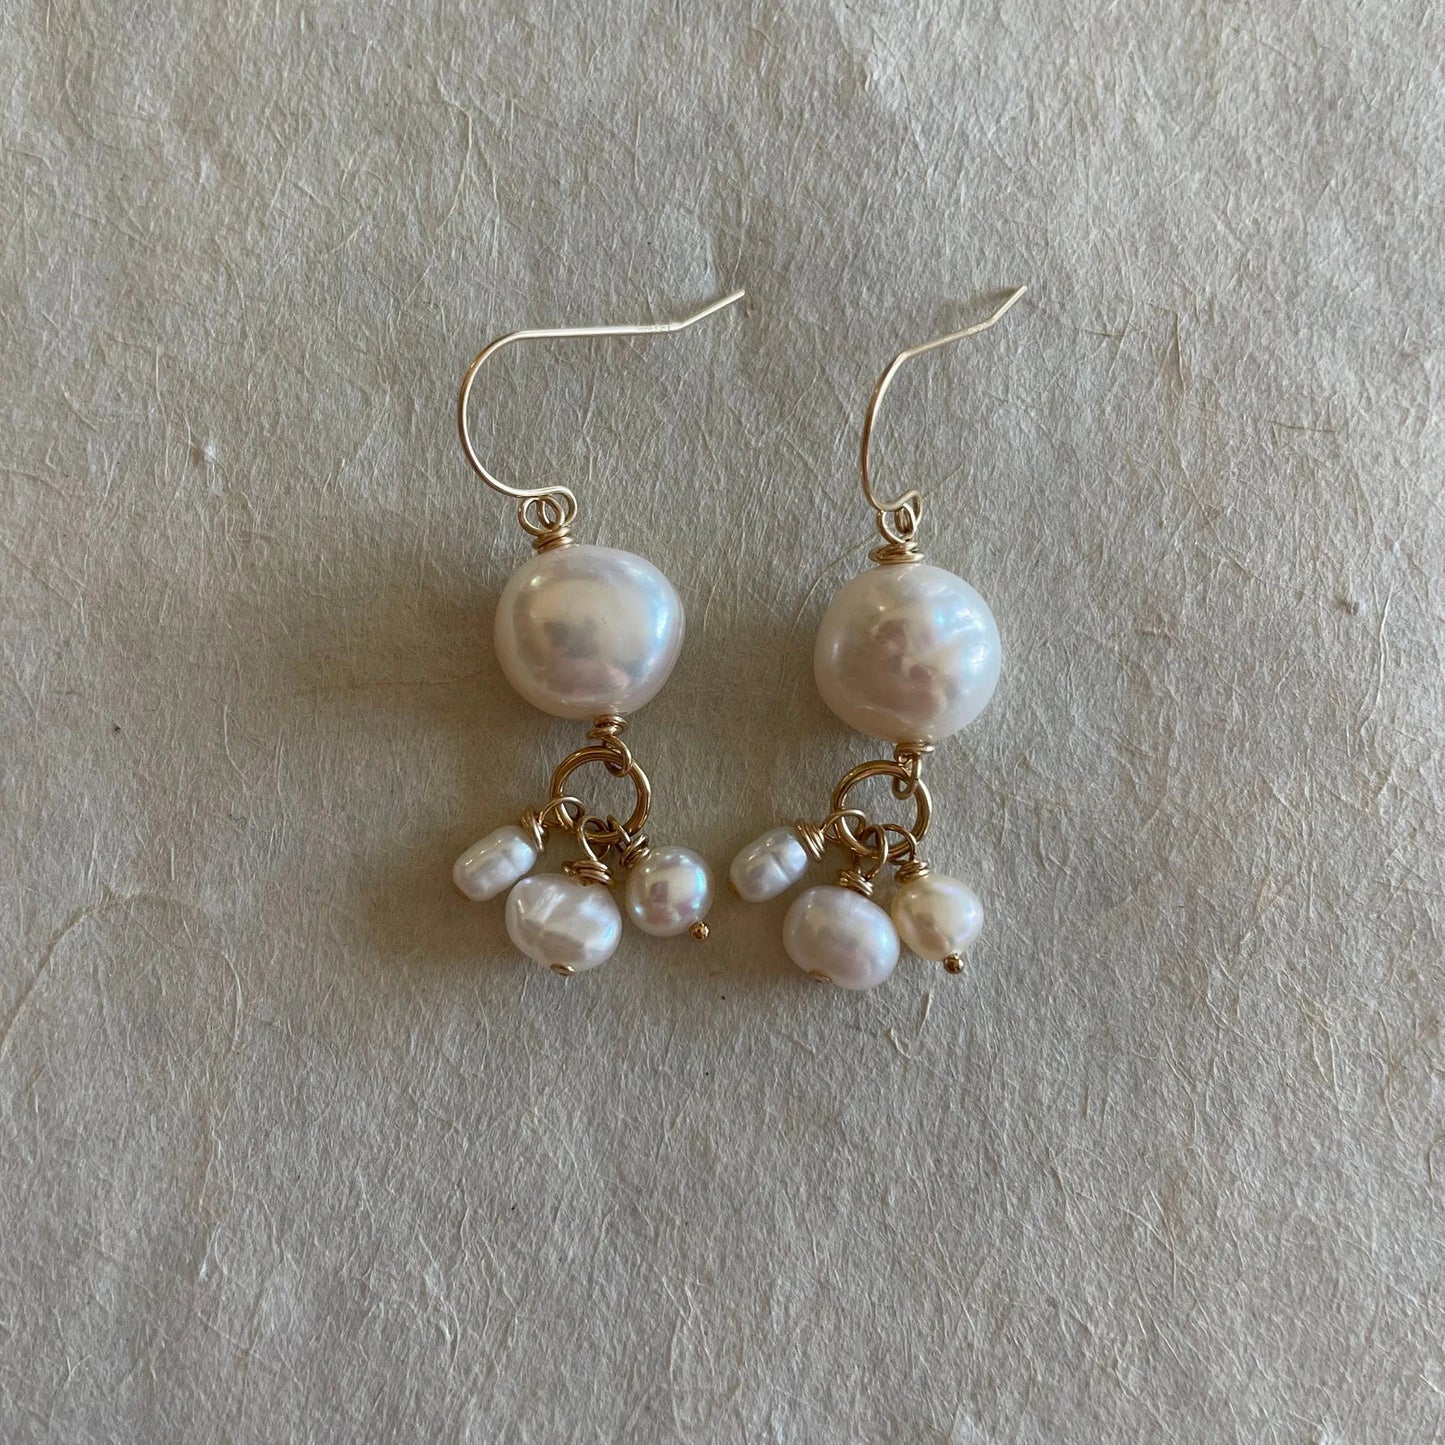 Dancing Fresh Water Pearl Earrings